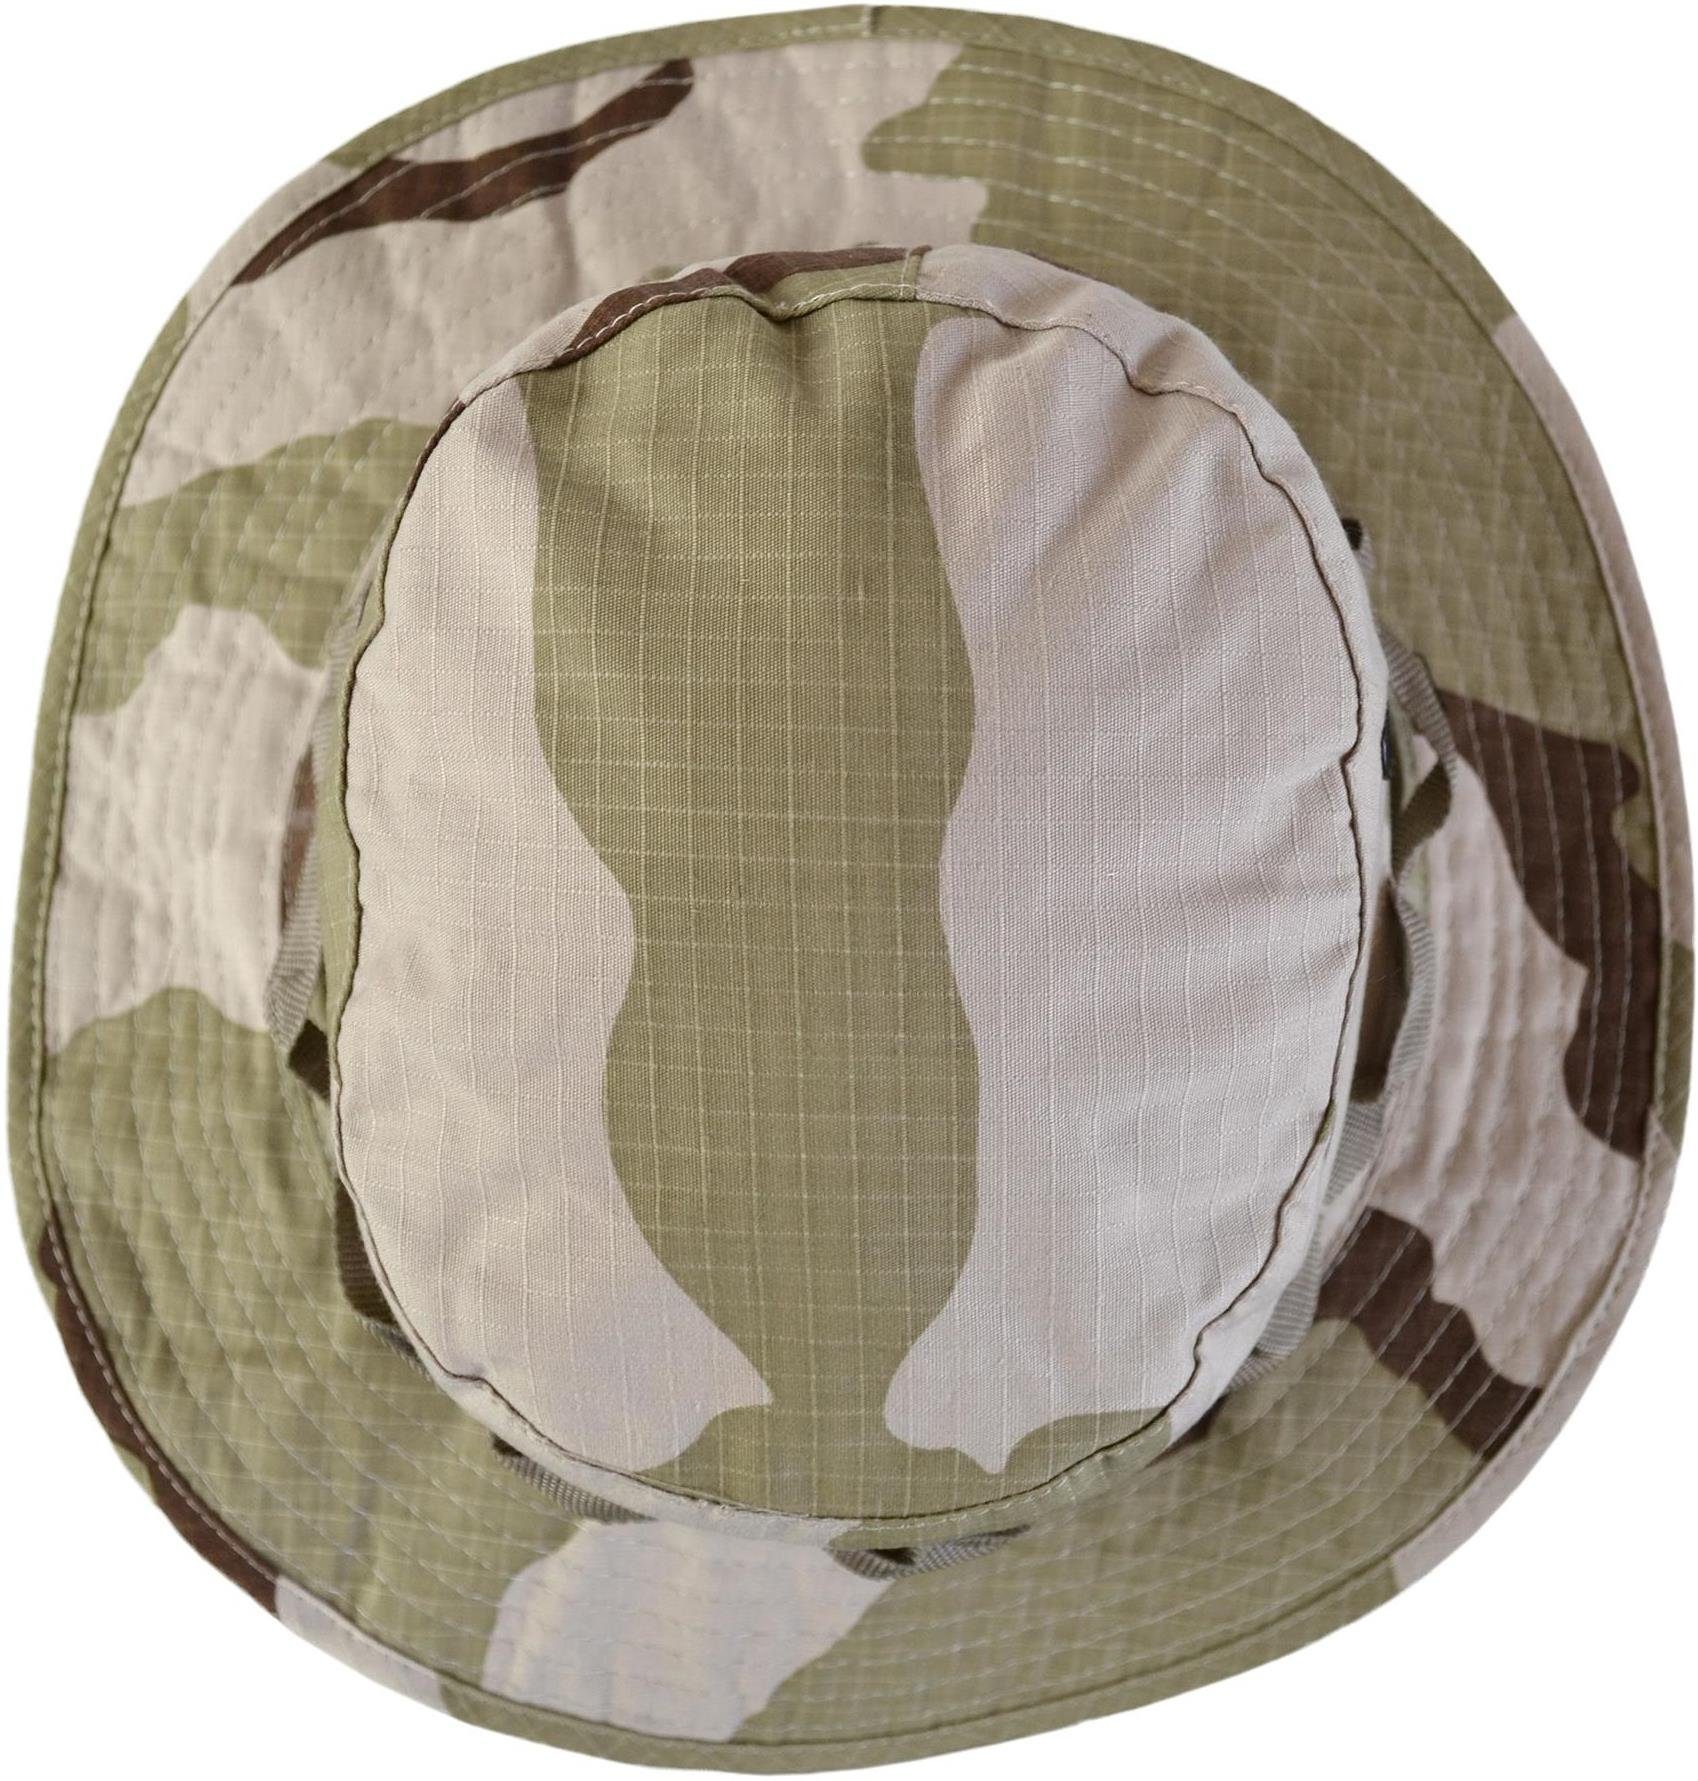 Hut Boonie Mütze Boondock Army Safari Buschhut Sonnenhut 3-Color-Desert Hat normani Sommenschutzhut Outdoorhut